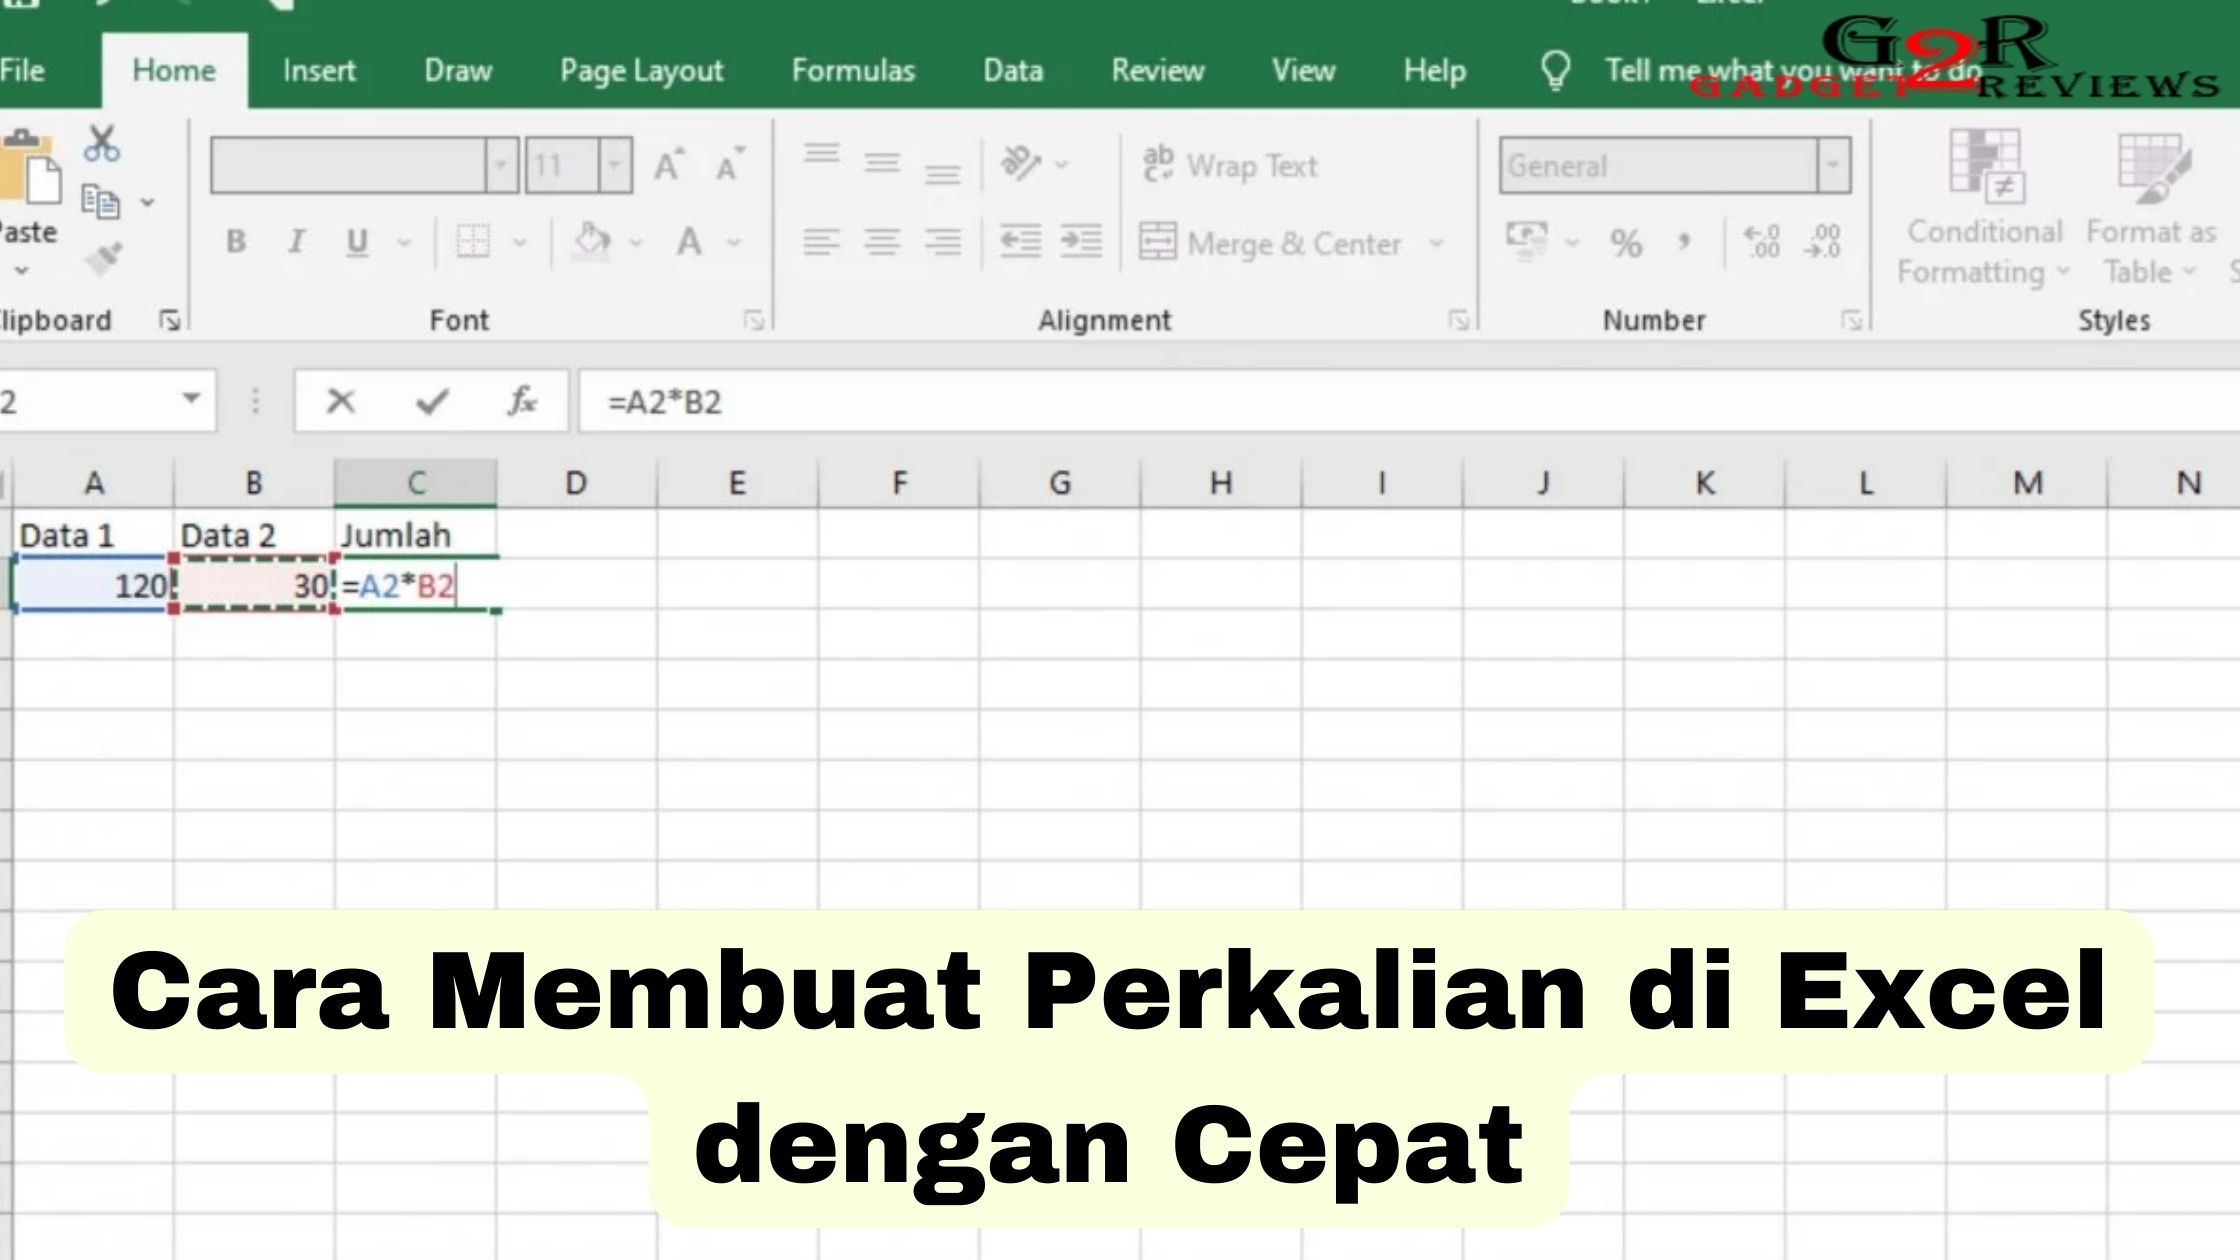 Cara Membuat Perkalian di Excel